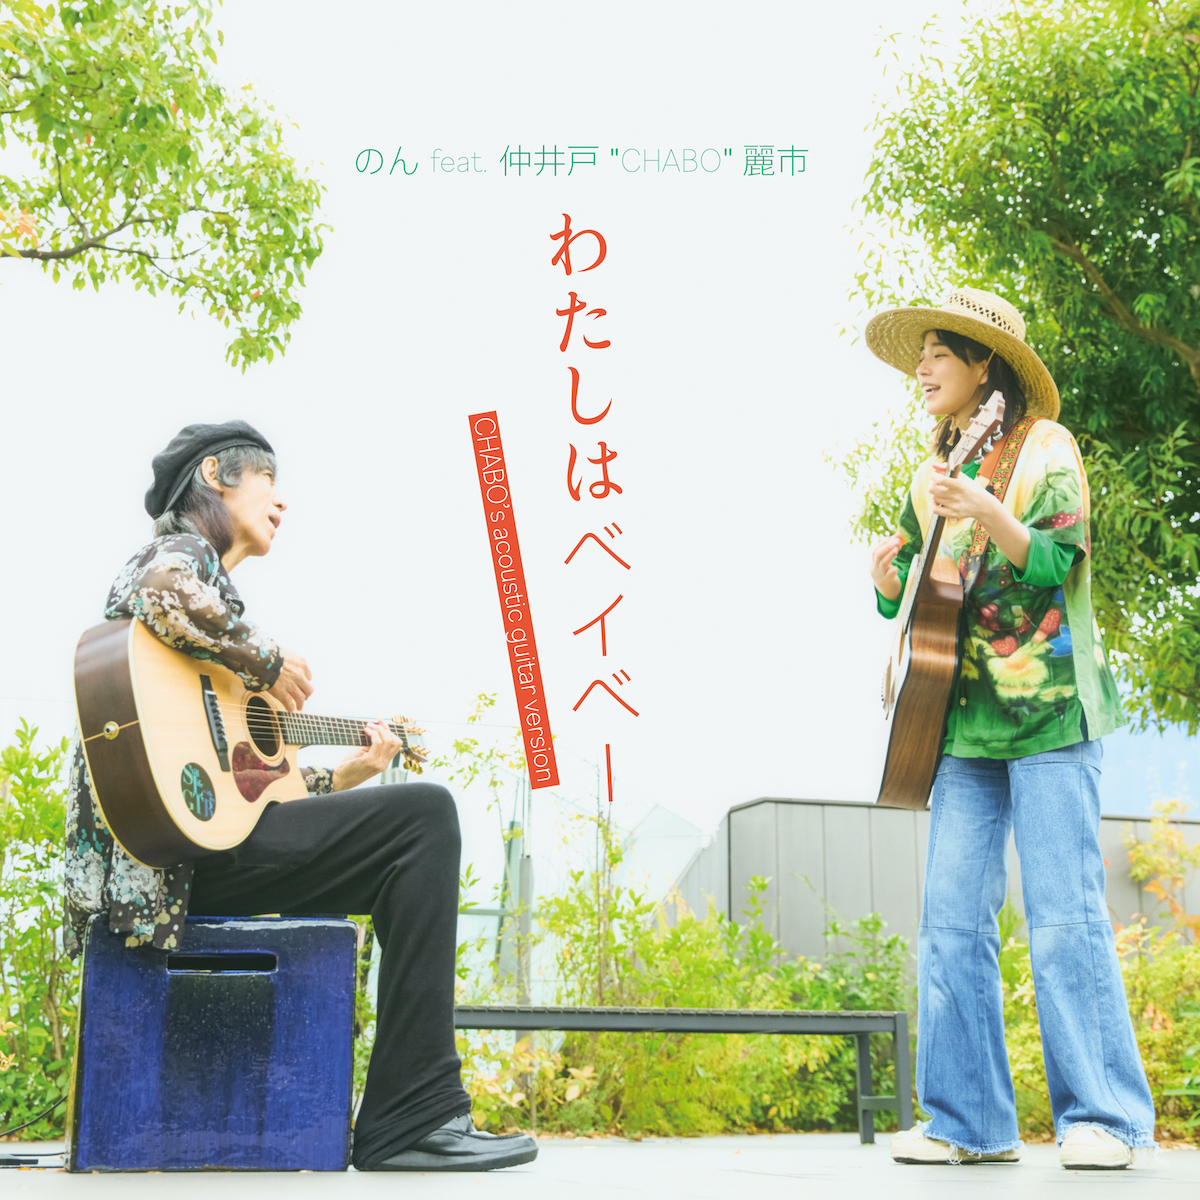 「わたしはベイベー (feat. 仲井戸"CHABO"麗市)」 [Chabo’s Acoustic guitar version]